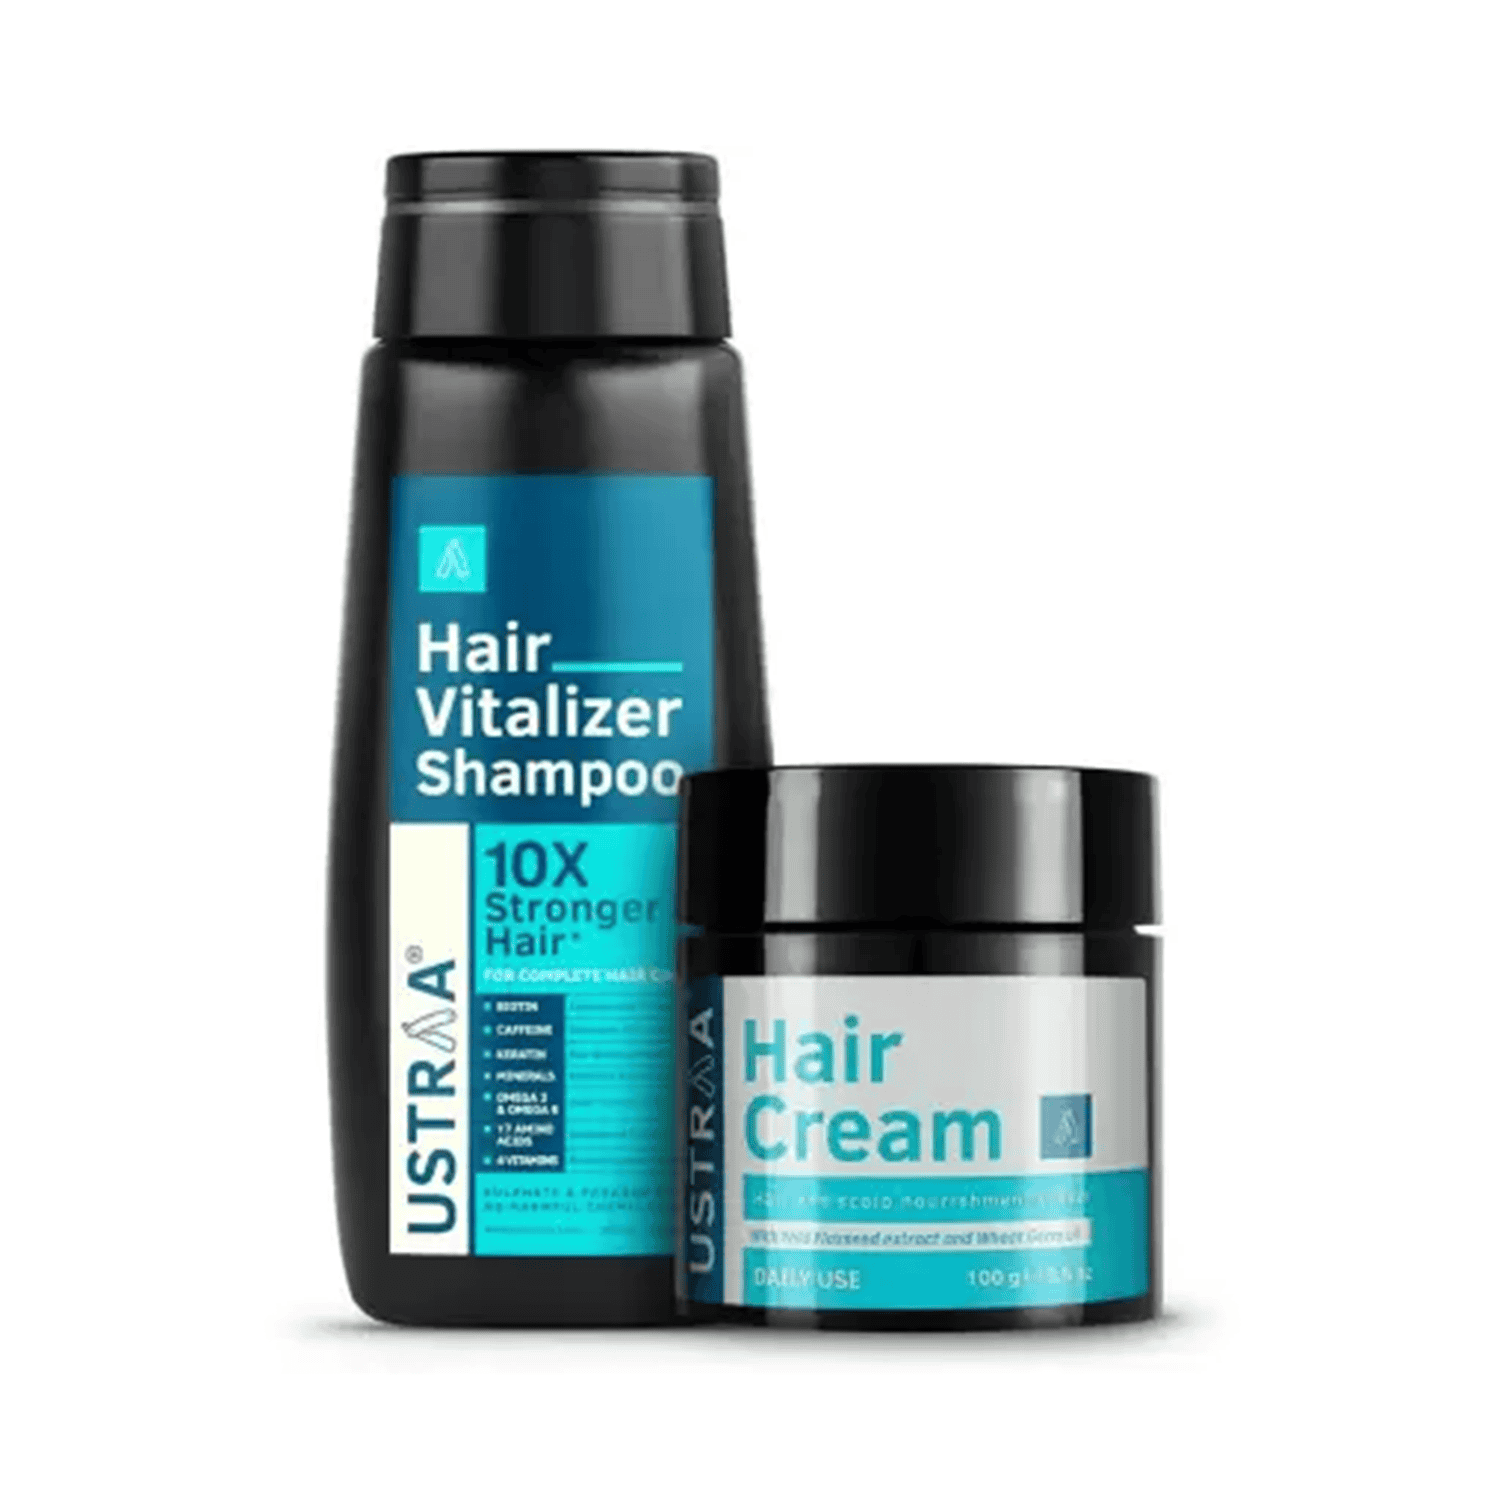 Ustraa | Ustraa Hair Vitalizer Shampoo & Hair Cream Daily-Use Combo